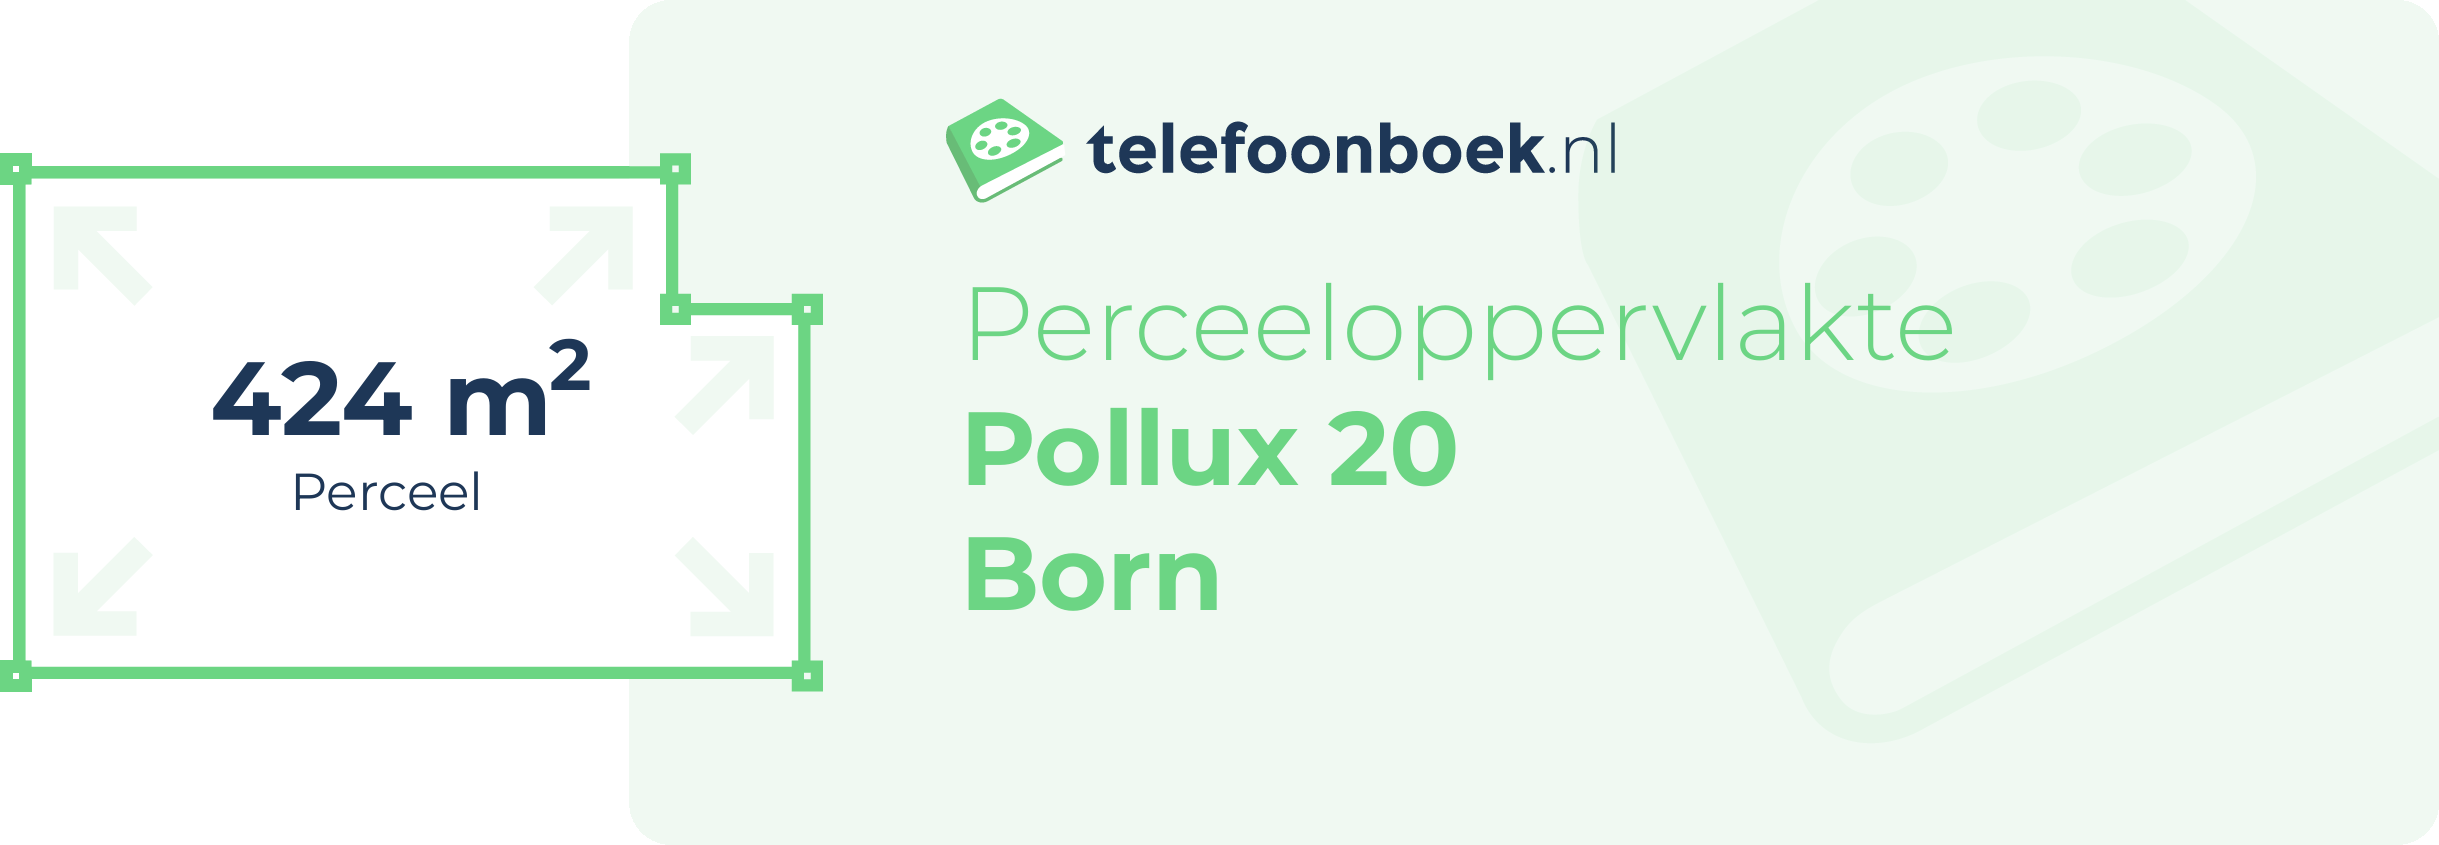 Perceeloppervlakte Pollux 20 Born